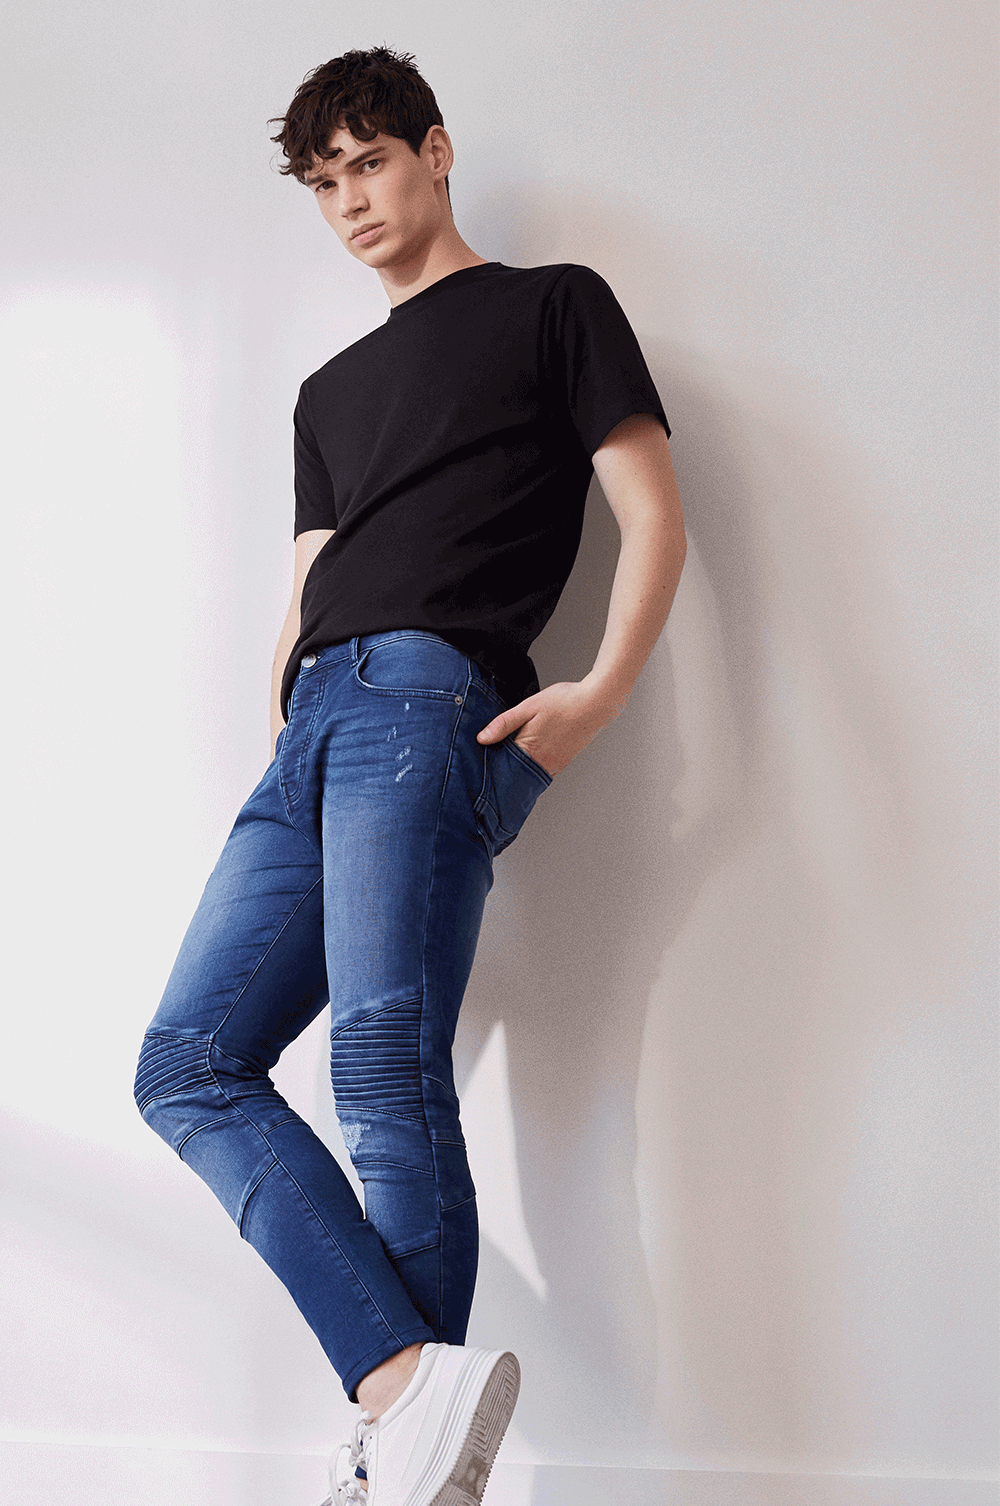 MODA UOMO Jeans NO STYLE Grigio W32 sconto 93% Primark Pantaloncini jeans 